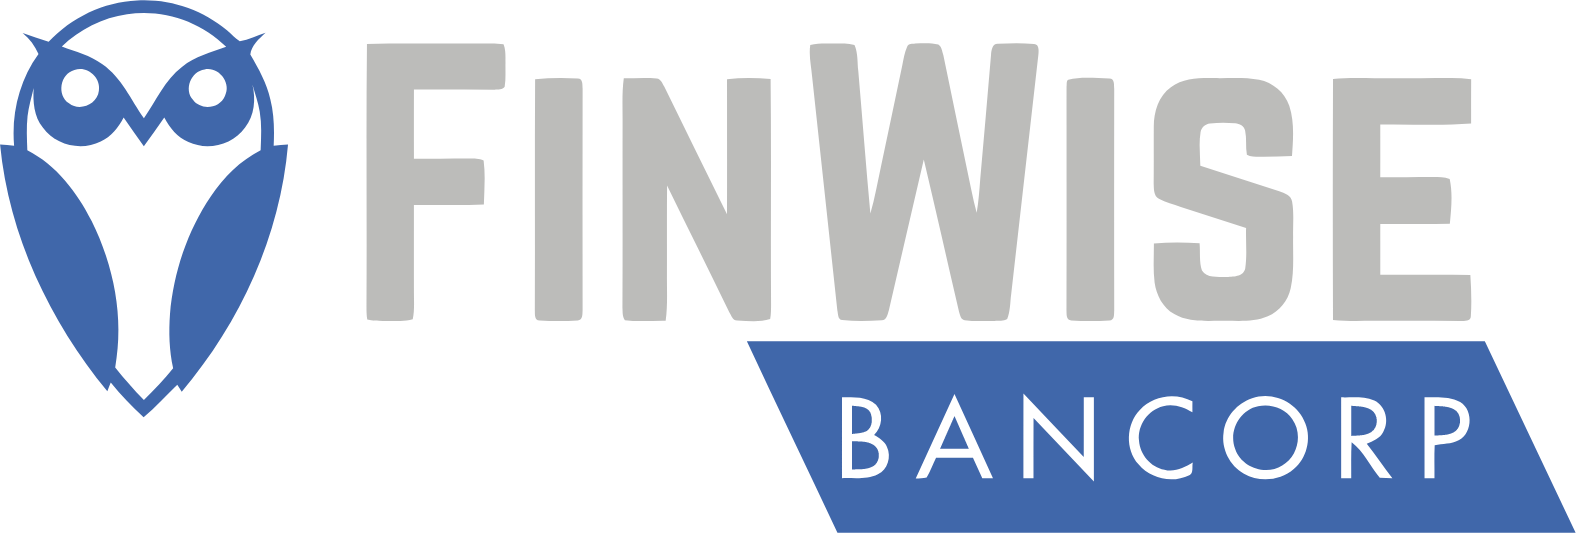 FinWise Bancorp logo large (transparent PNG)